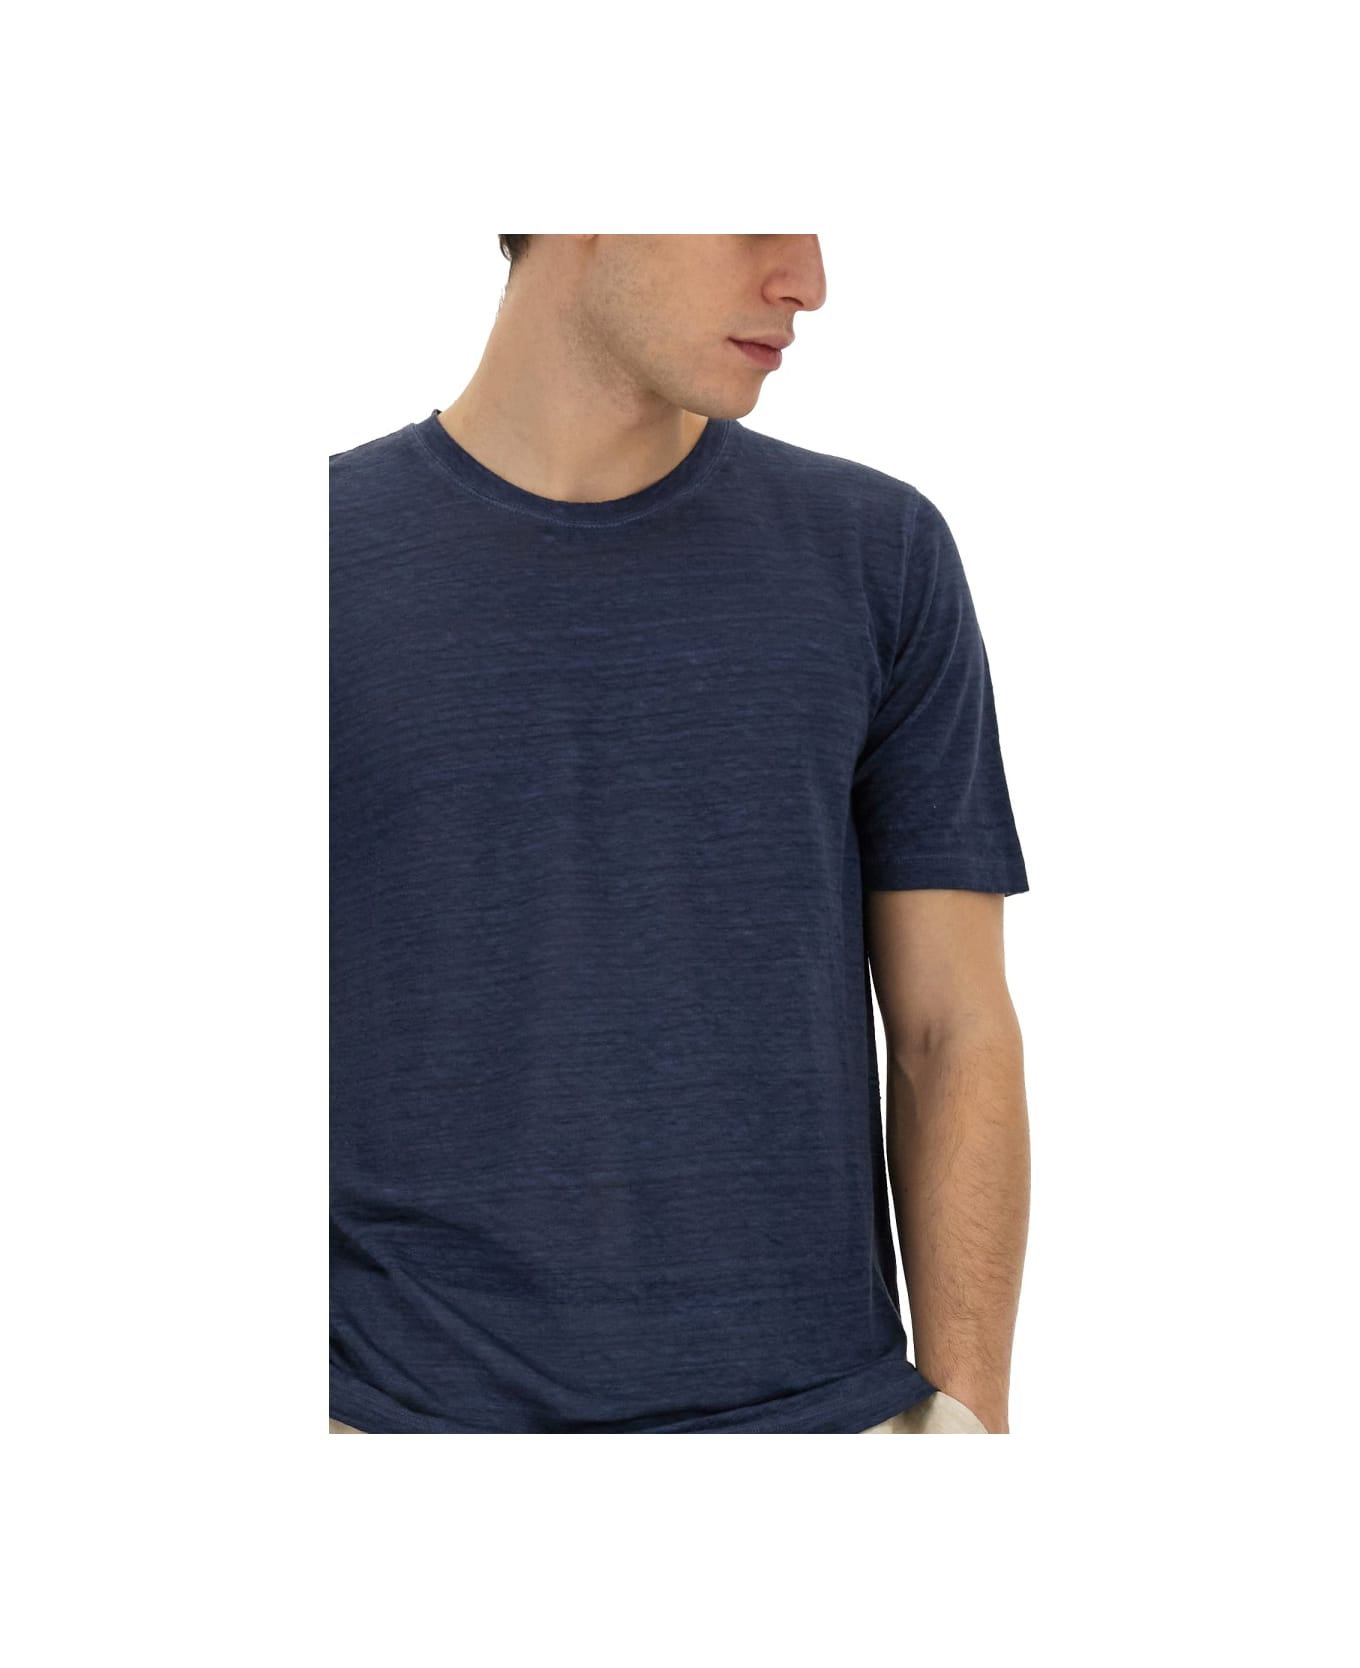 120% Lino Linen T-shirt - BLUE シャツ